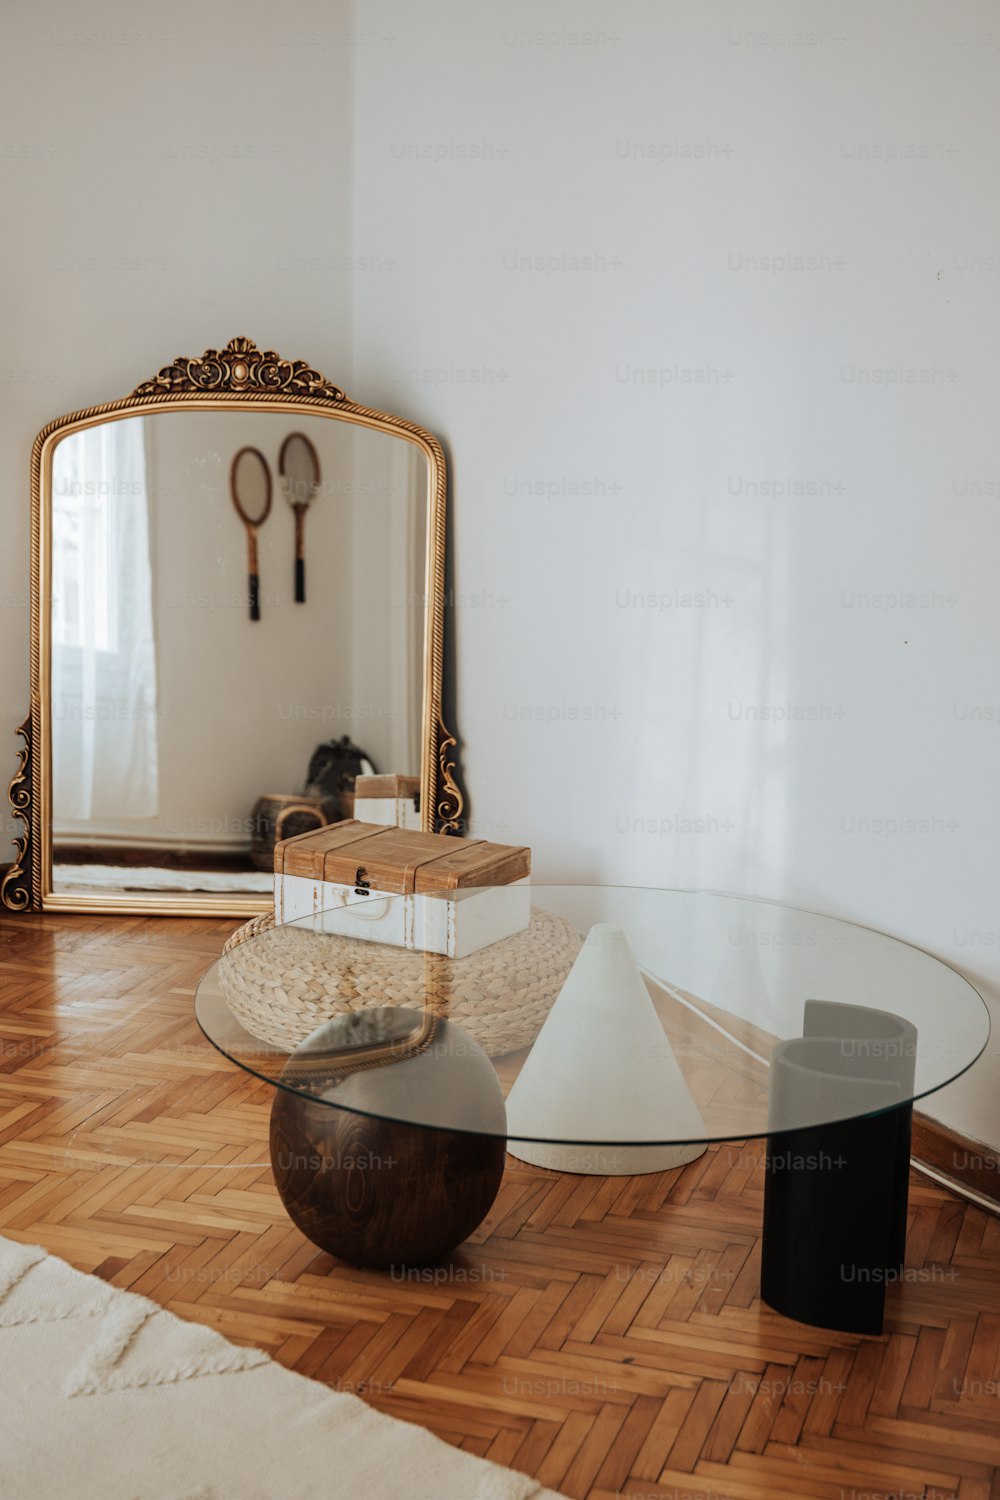 테이블, 거울 및 기타 물품이 있는 거실